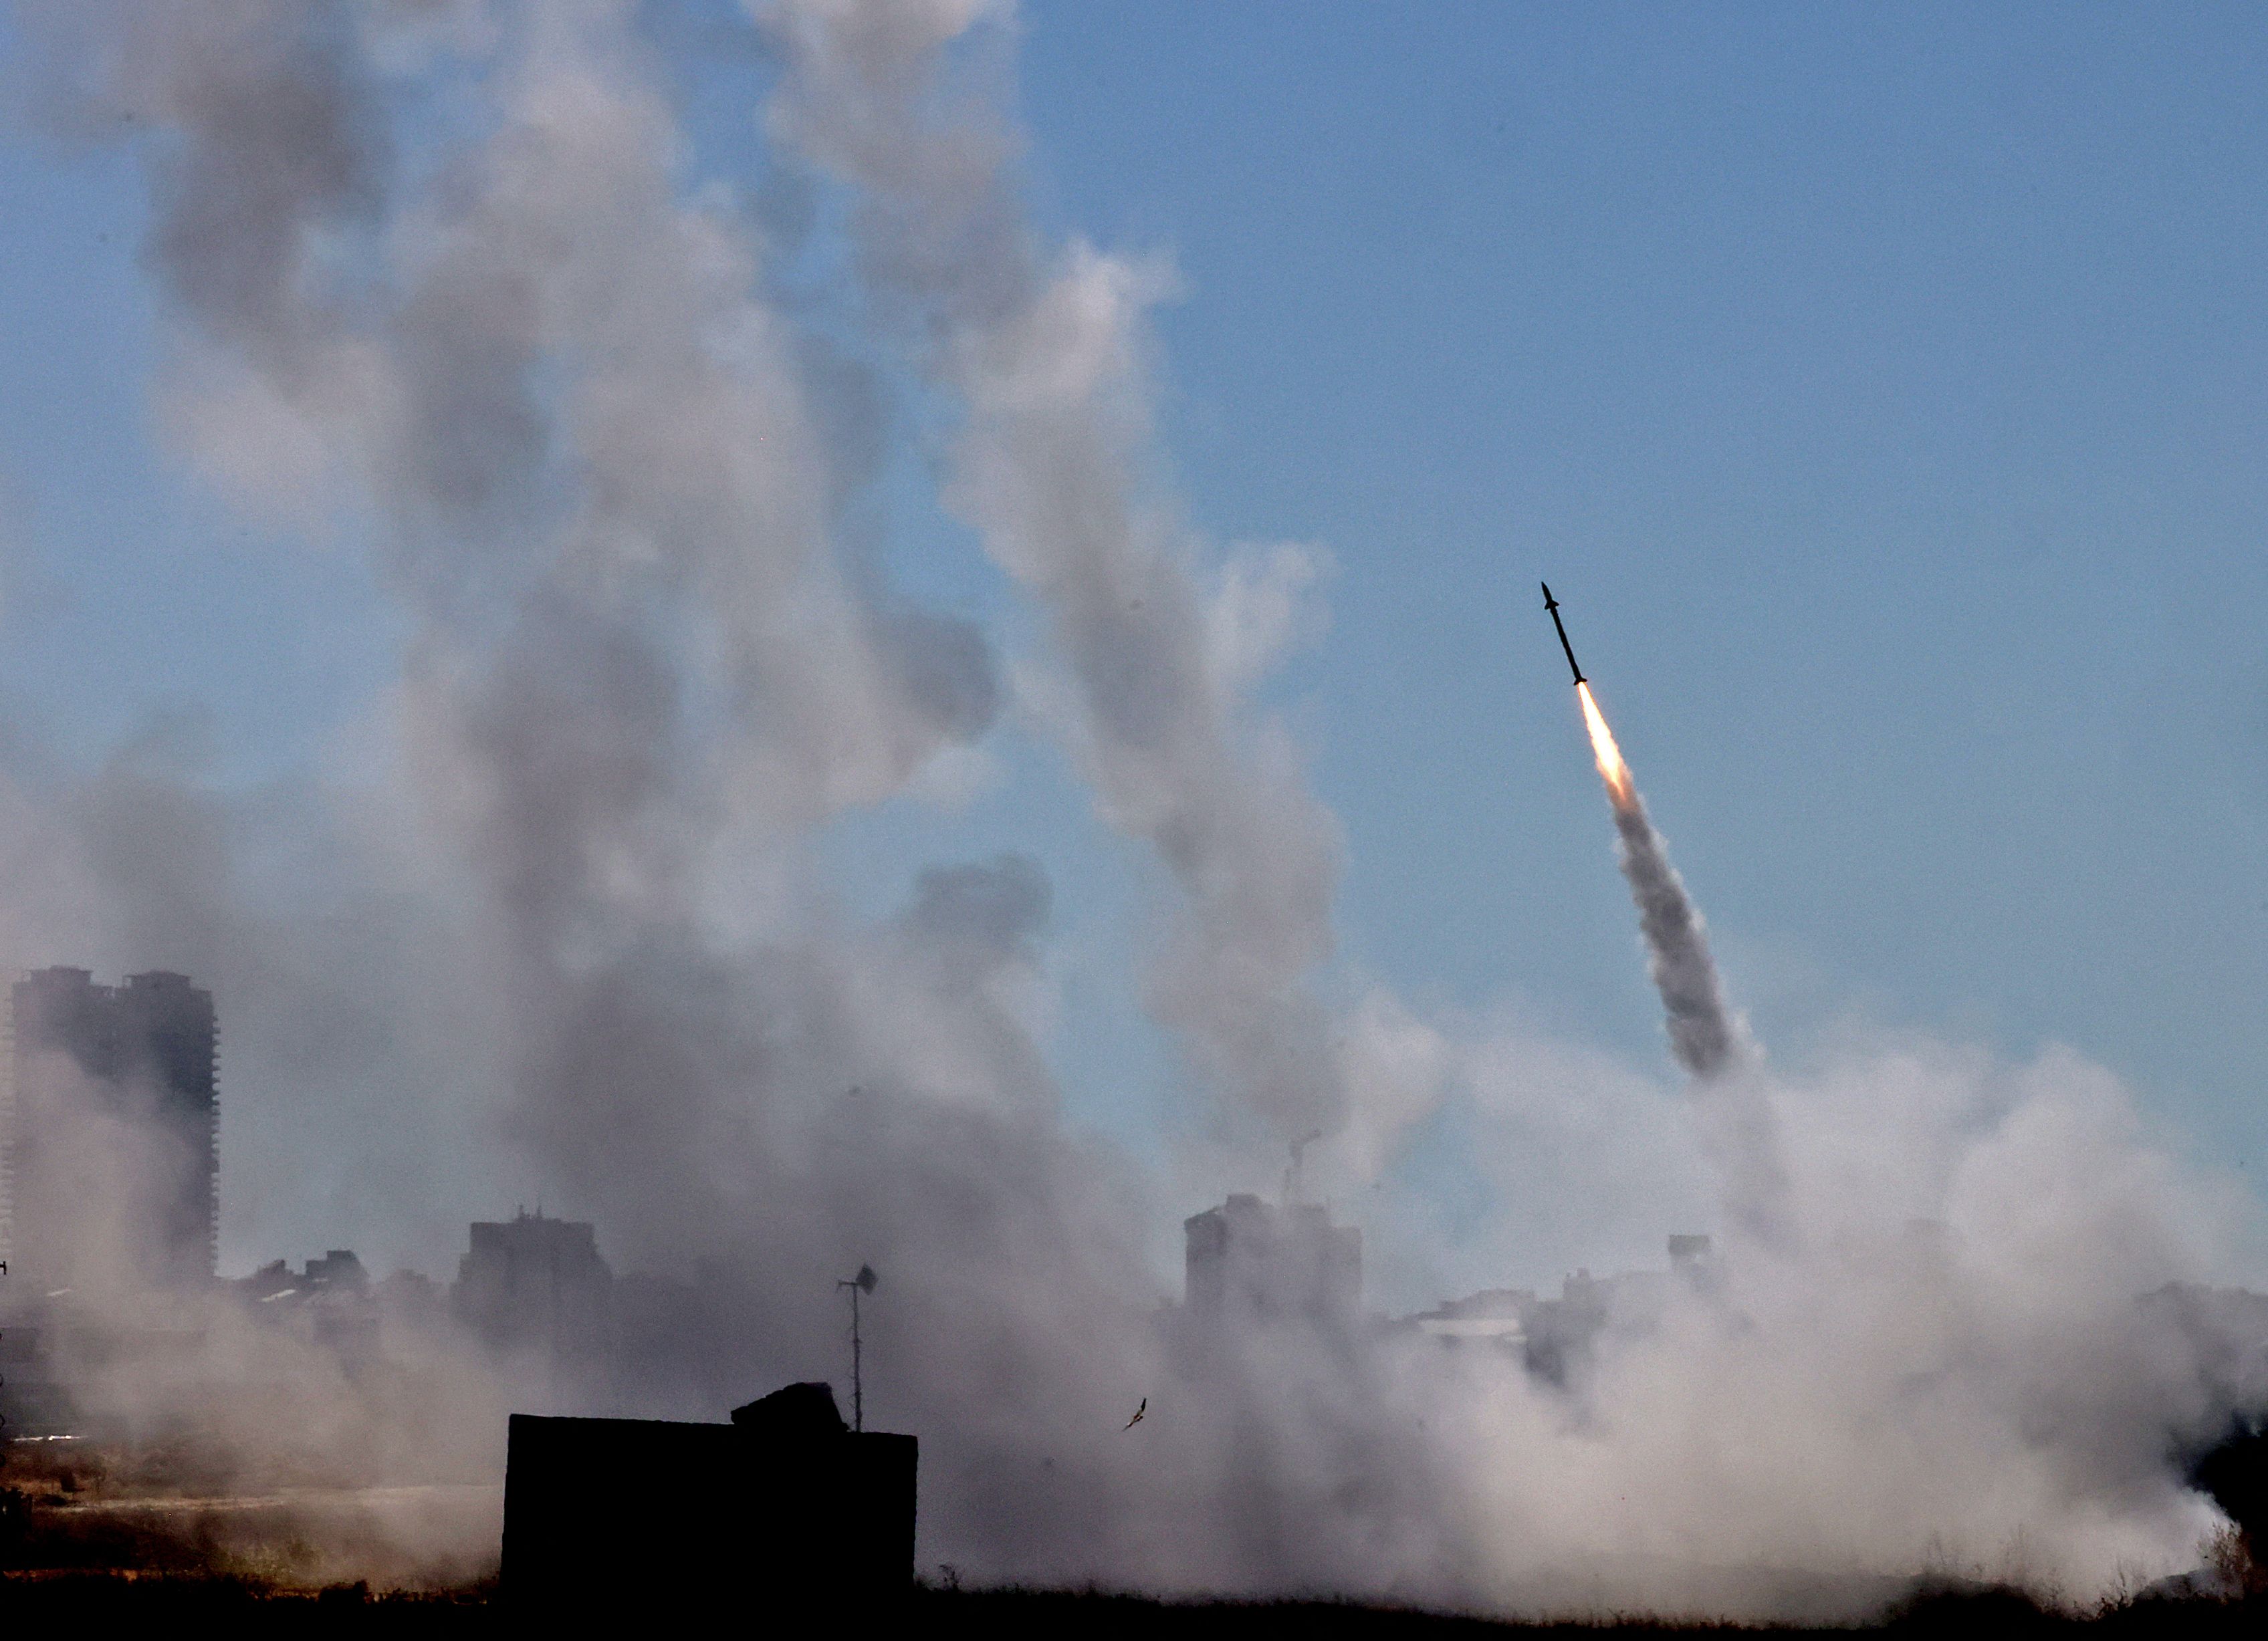 El sistema de defensa aérea Iron Dome de Israel se activa para interceptar un cohete lanzado desde la Franja de Gaza, controlado por el movimiento palestino Hamas, sobre la ciudad de Ashdod, en el sur de Israel. (Foto Prensa Libre: AFP)